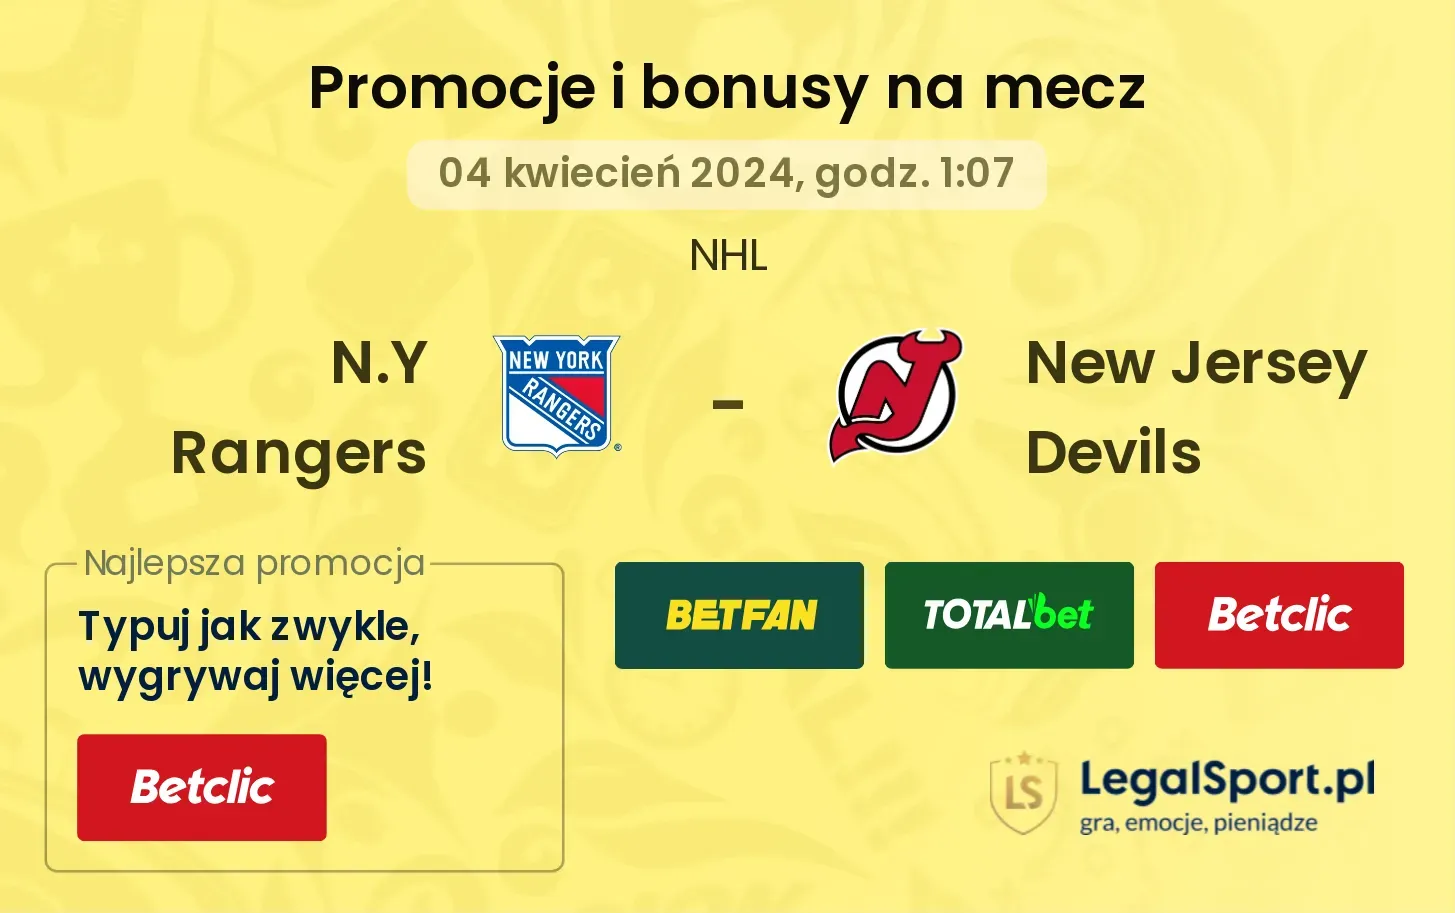 N.Y Rangers - New Jersey Devils promocje bonusy na mecz